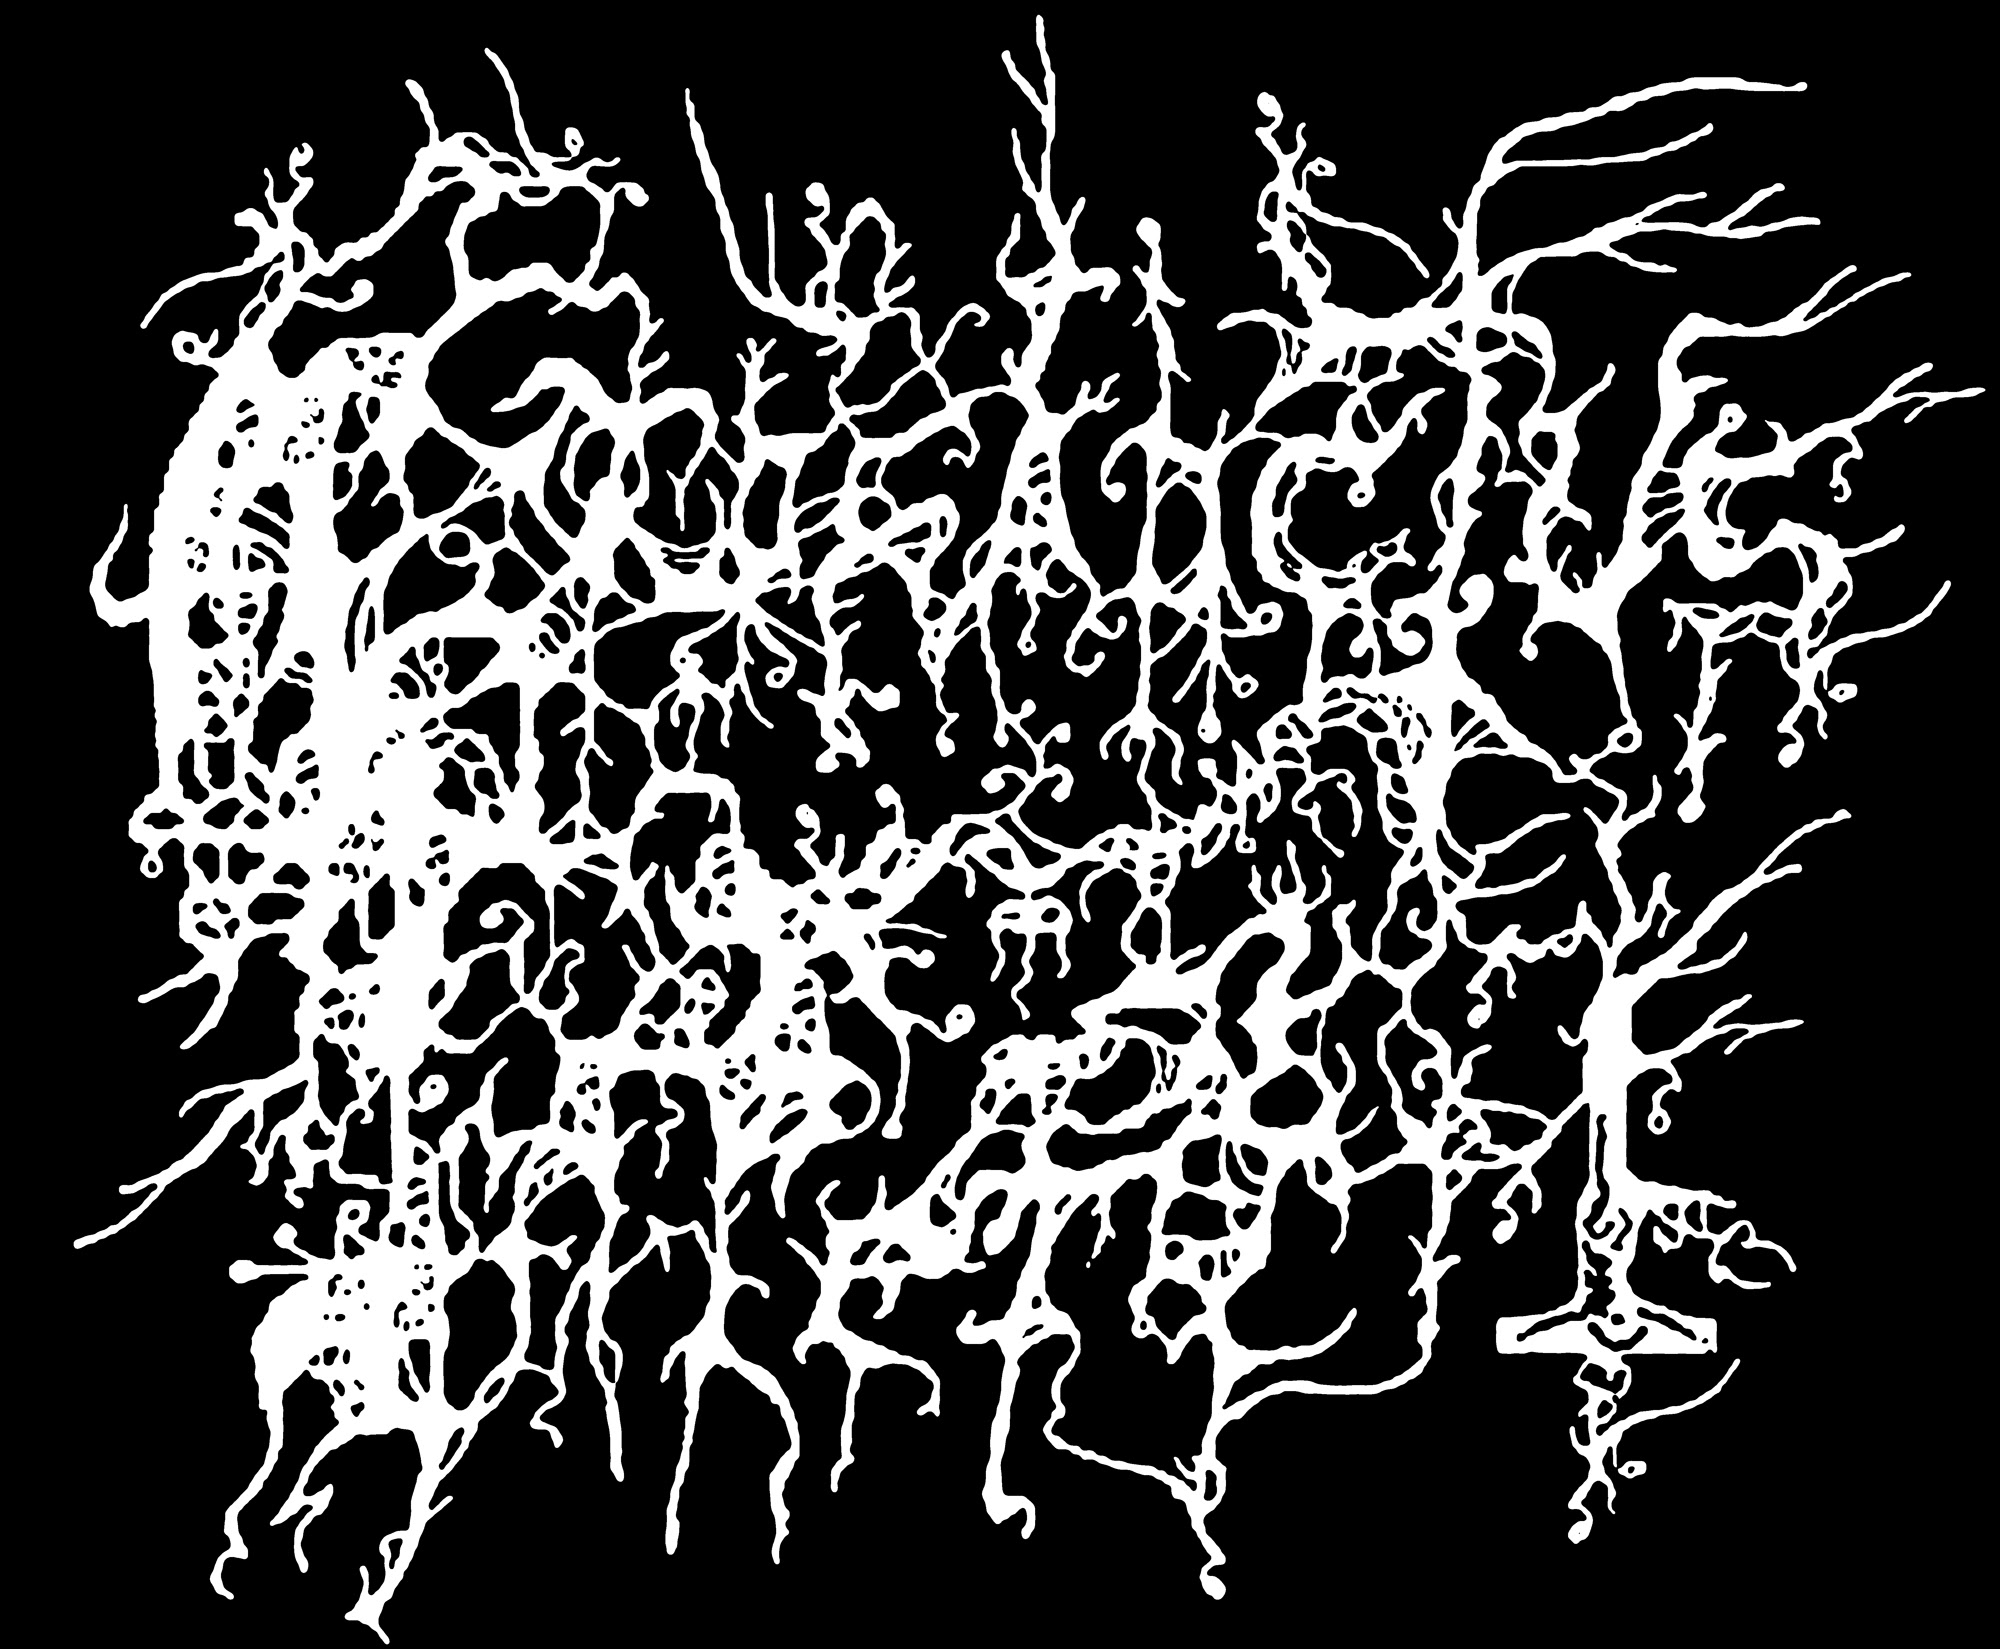 Тексты метал групп. Лого Блэк метал групп. Название грайндкор группы. Лого грайндкор метал групп. Названия Блэк метал групп.